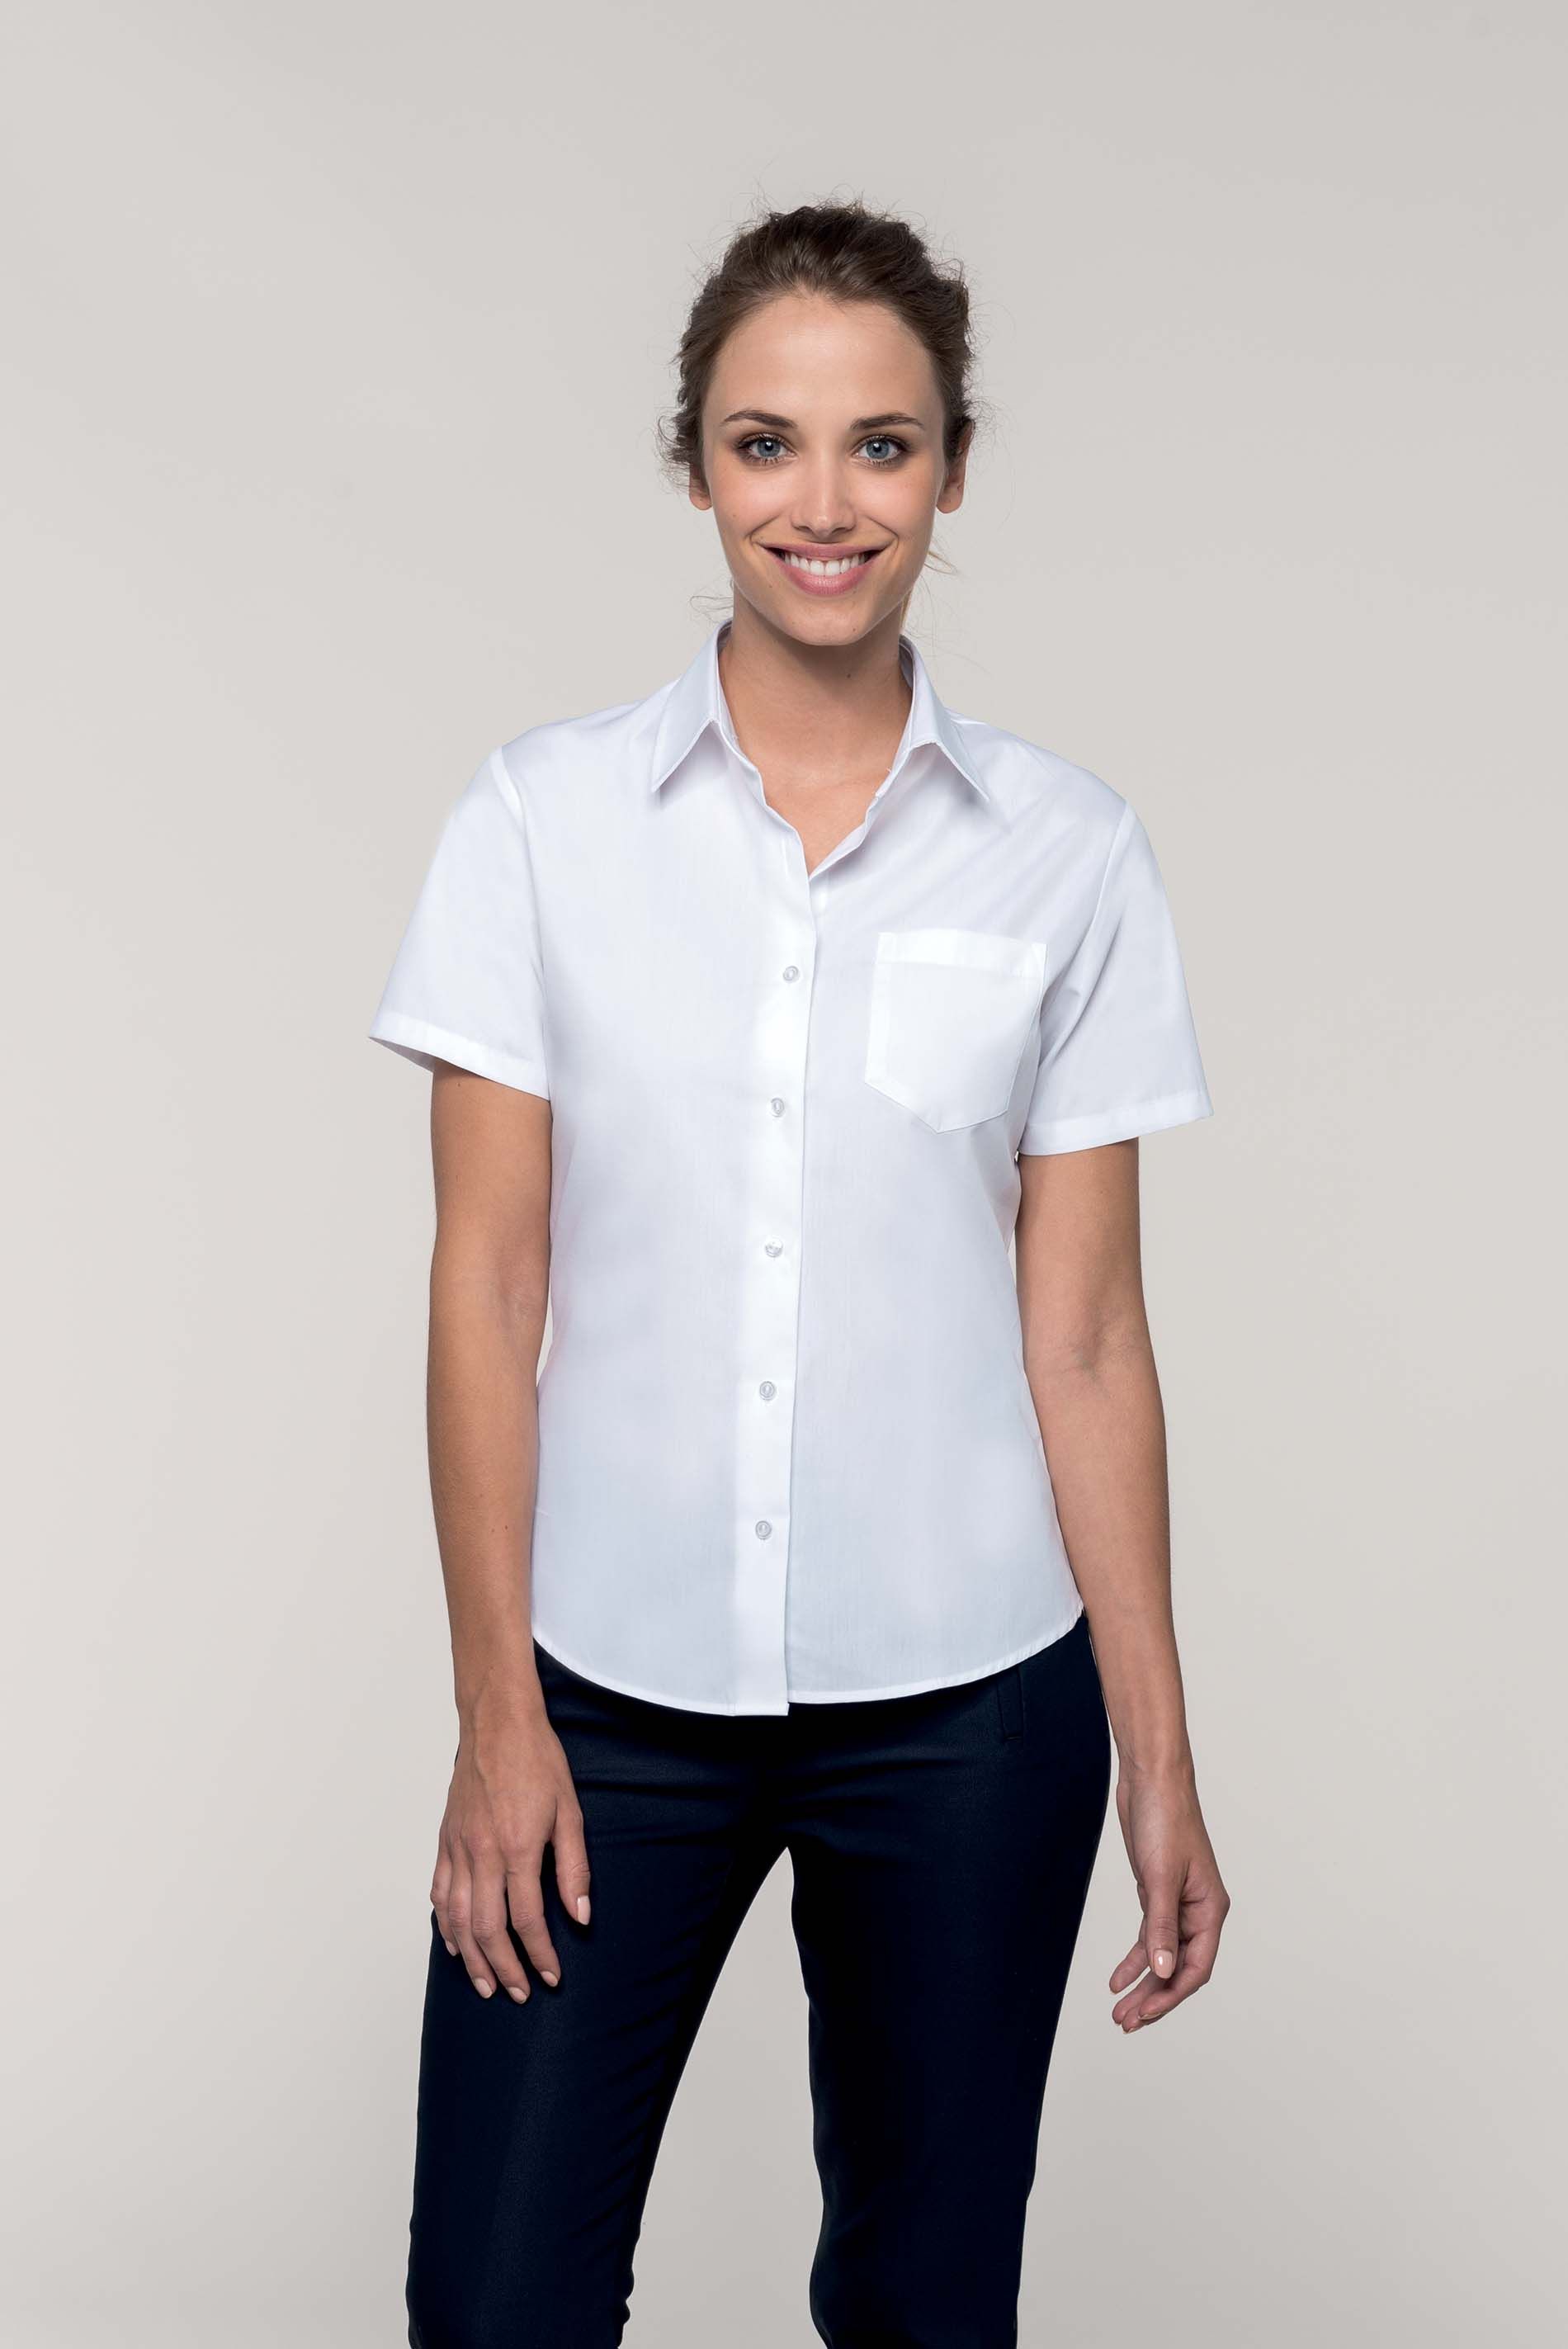 Chemise manches courtes femme à commander et personnaliser en ligne chez Textile Direct